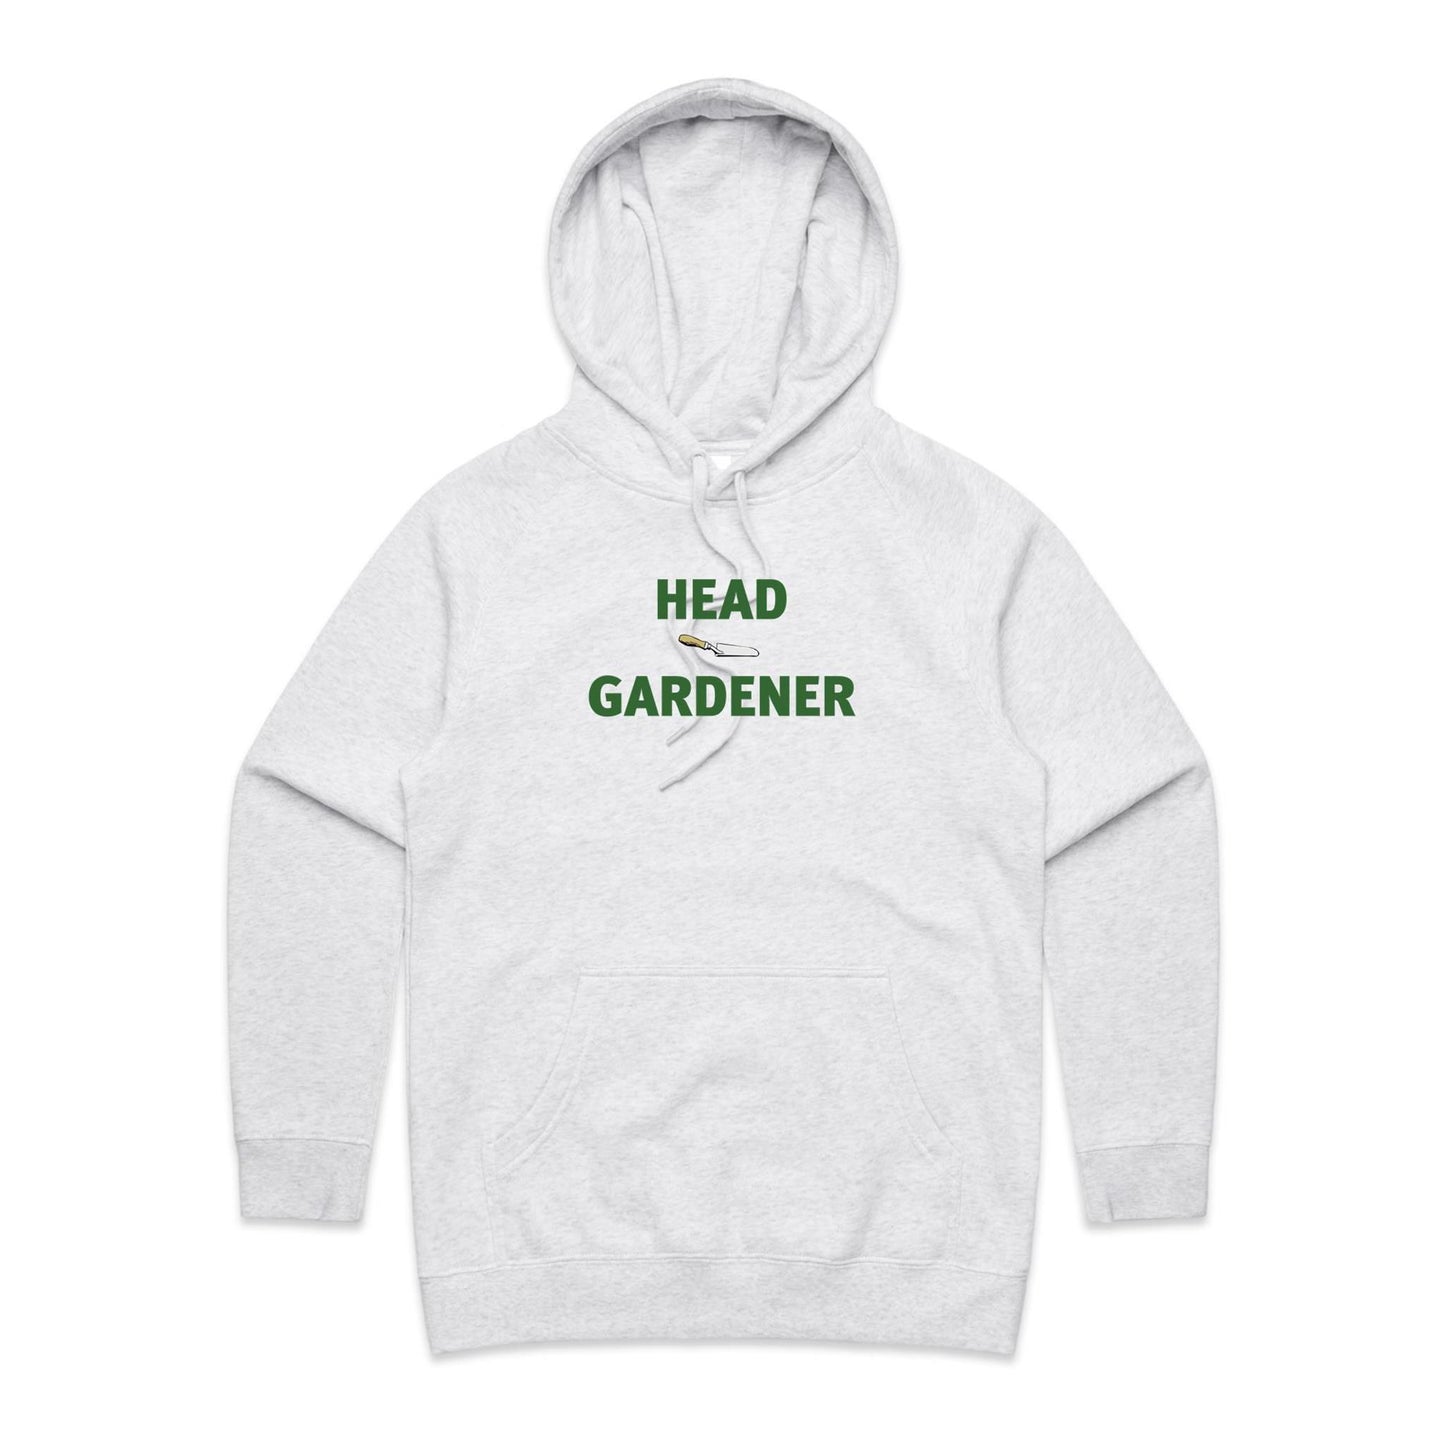 Head Gardener Hoodies for Women